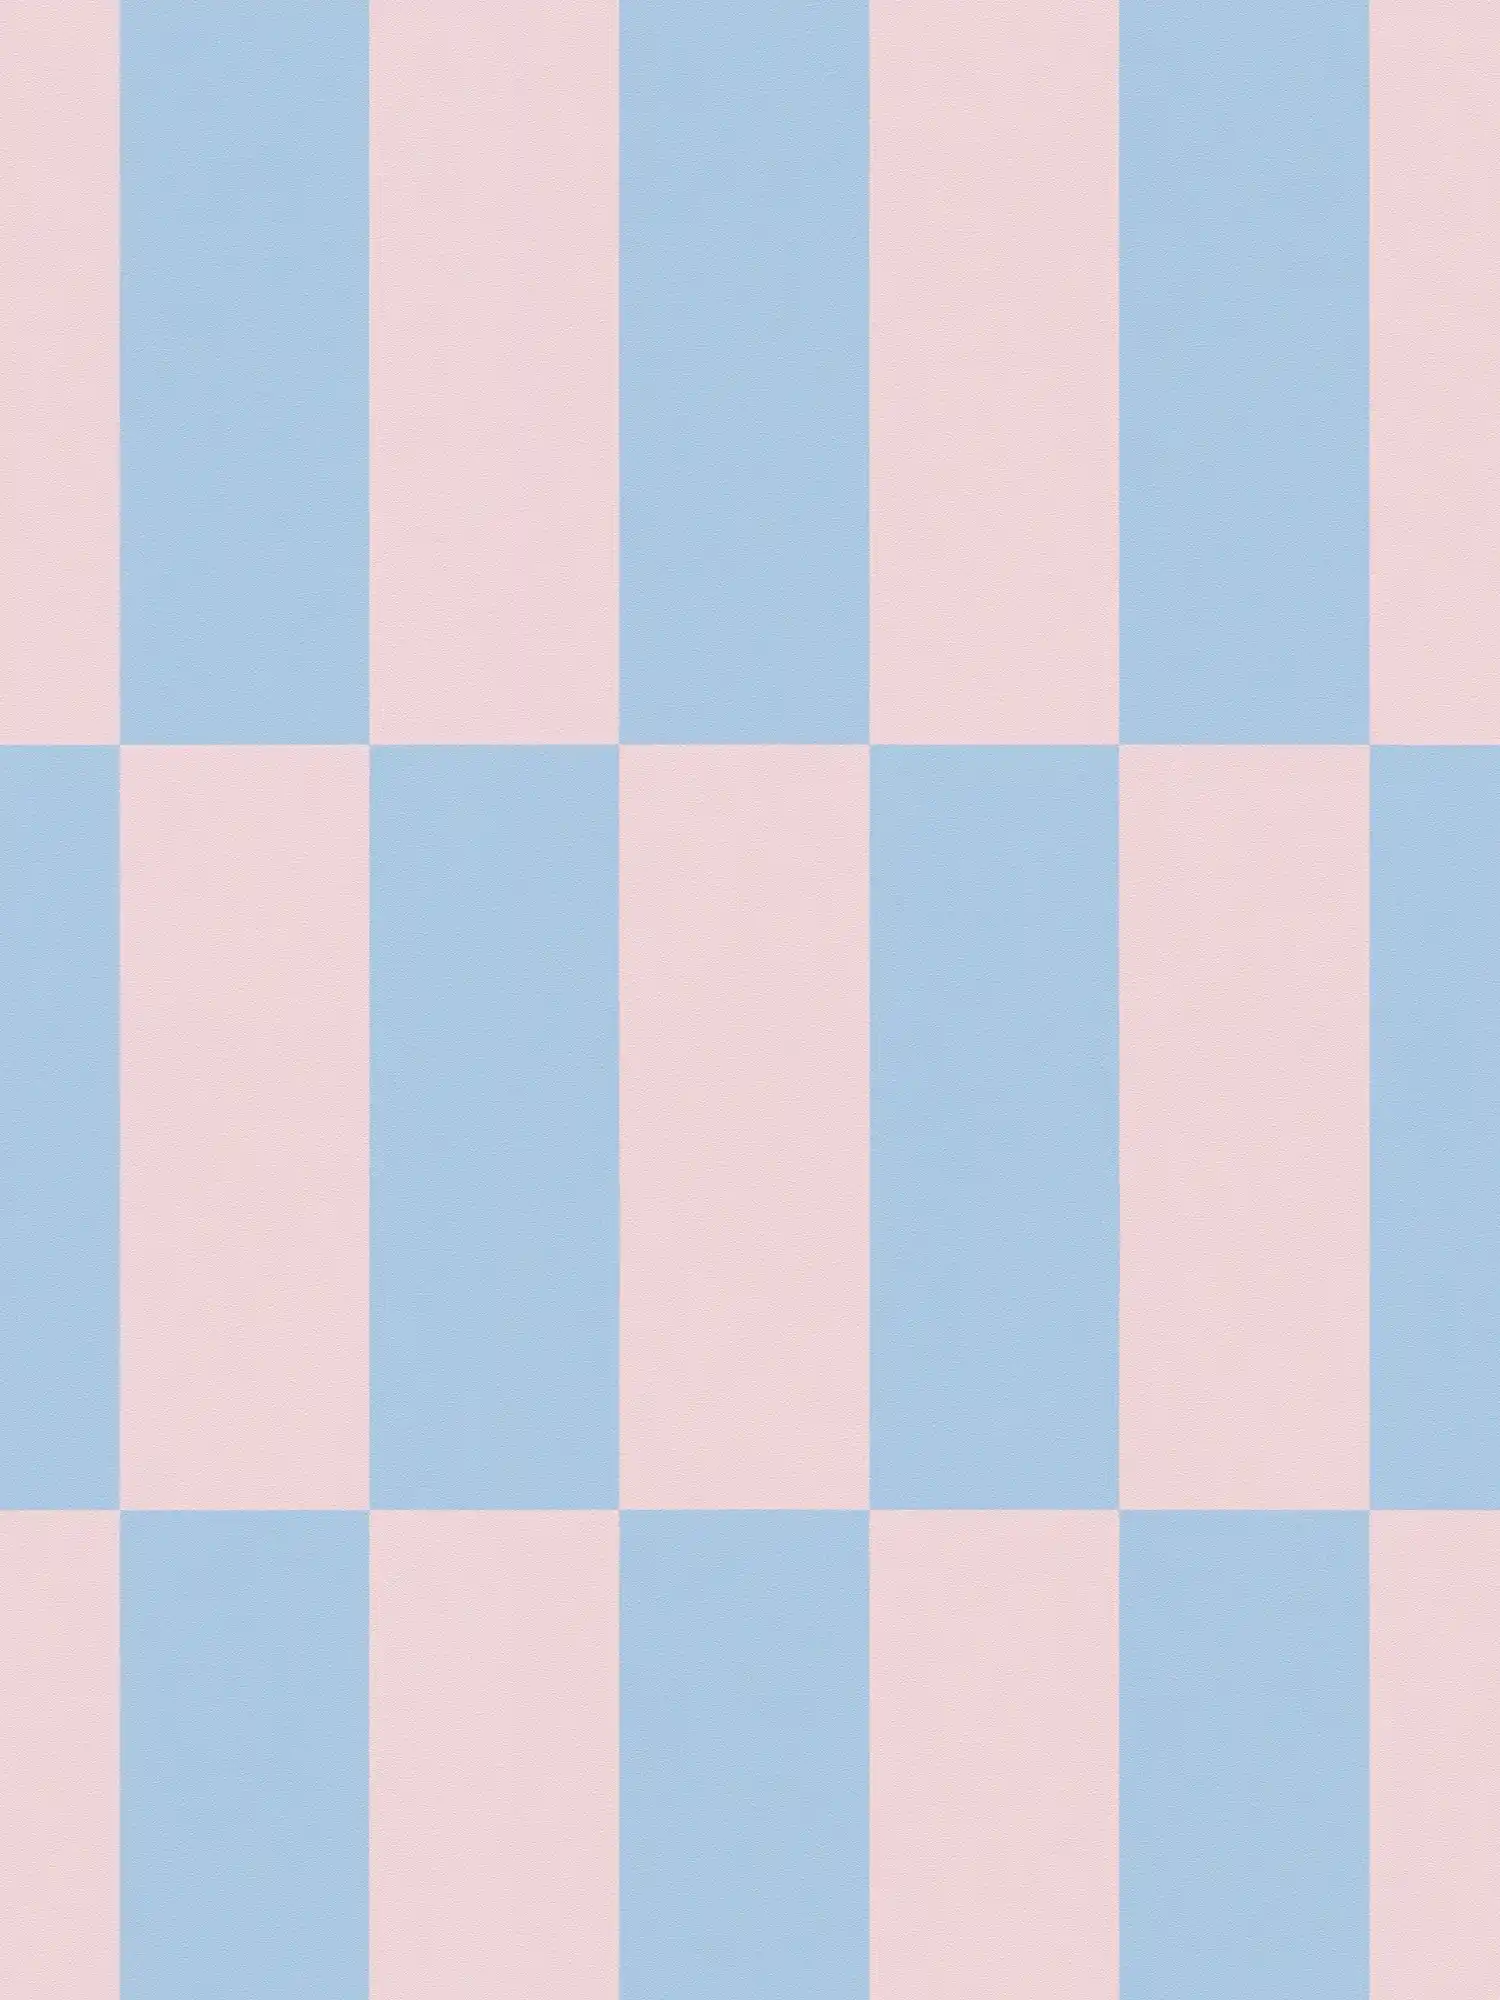         Papel pintado no tejido cuadrados gráficos bicolor - azul, rosa
    